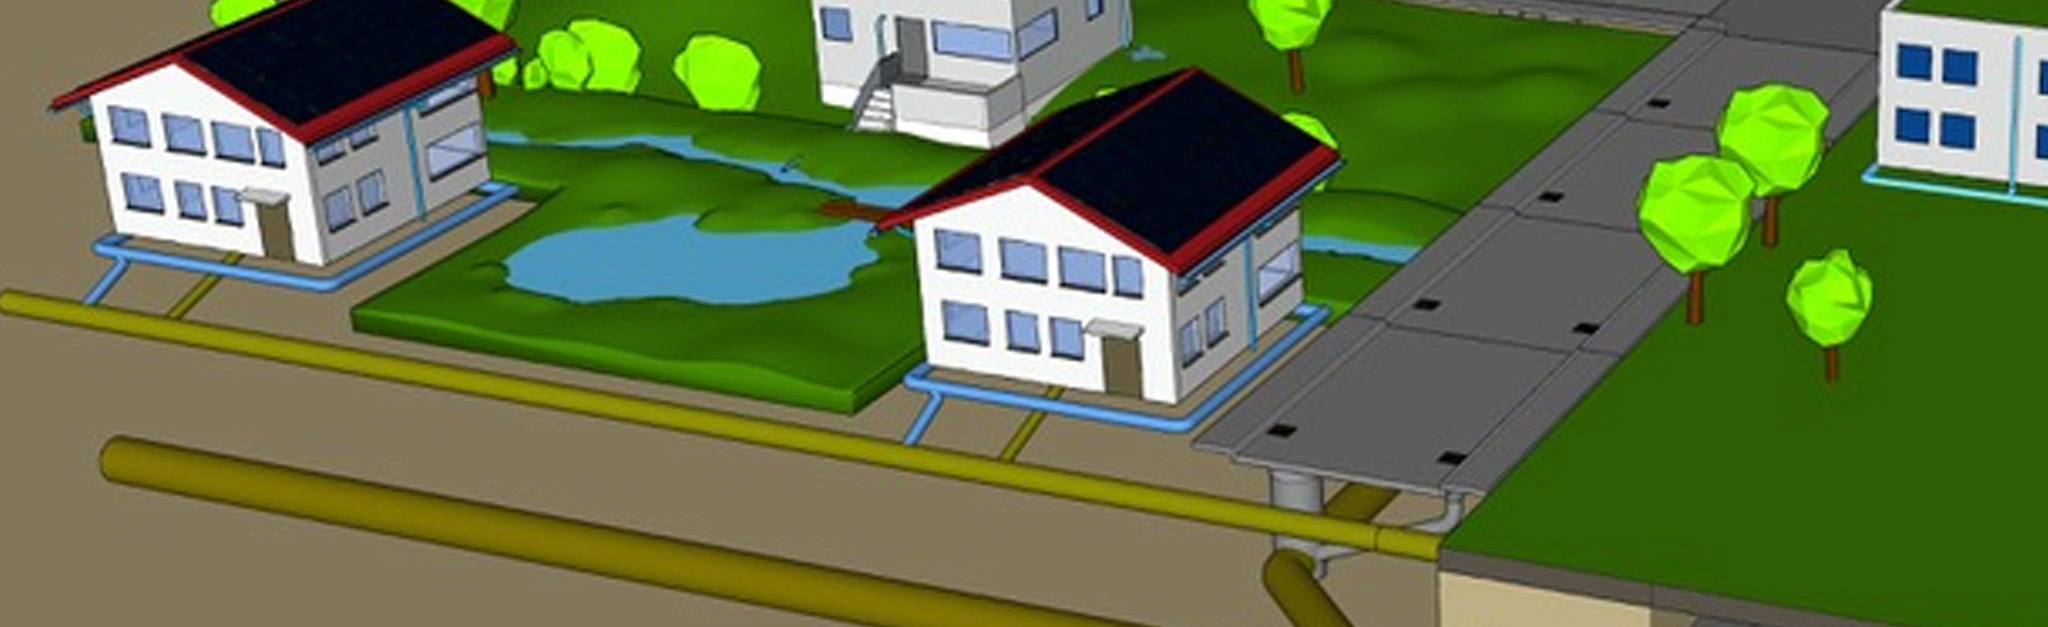 Ein 3D-Modell einer Stadt mit Häusern und einem Teich.